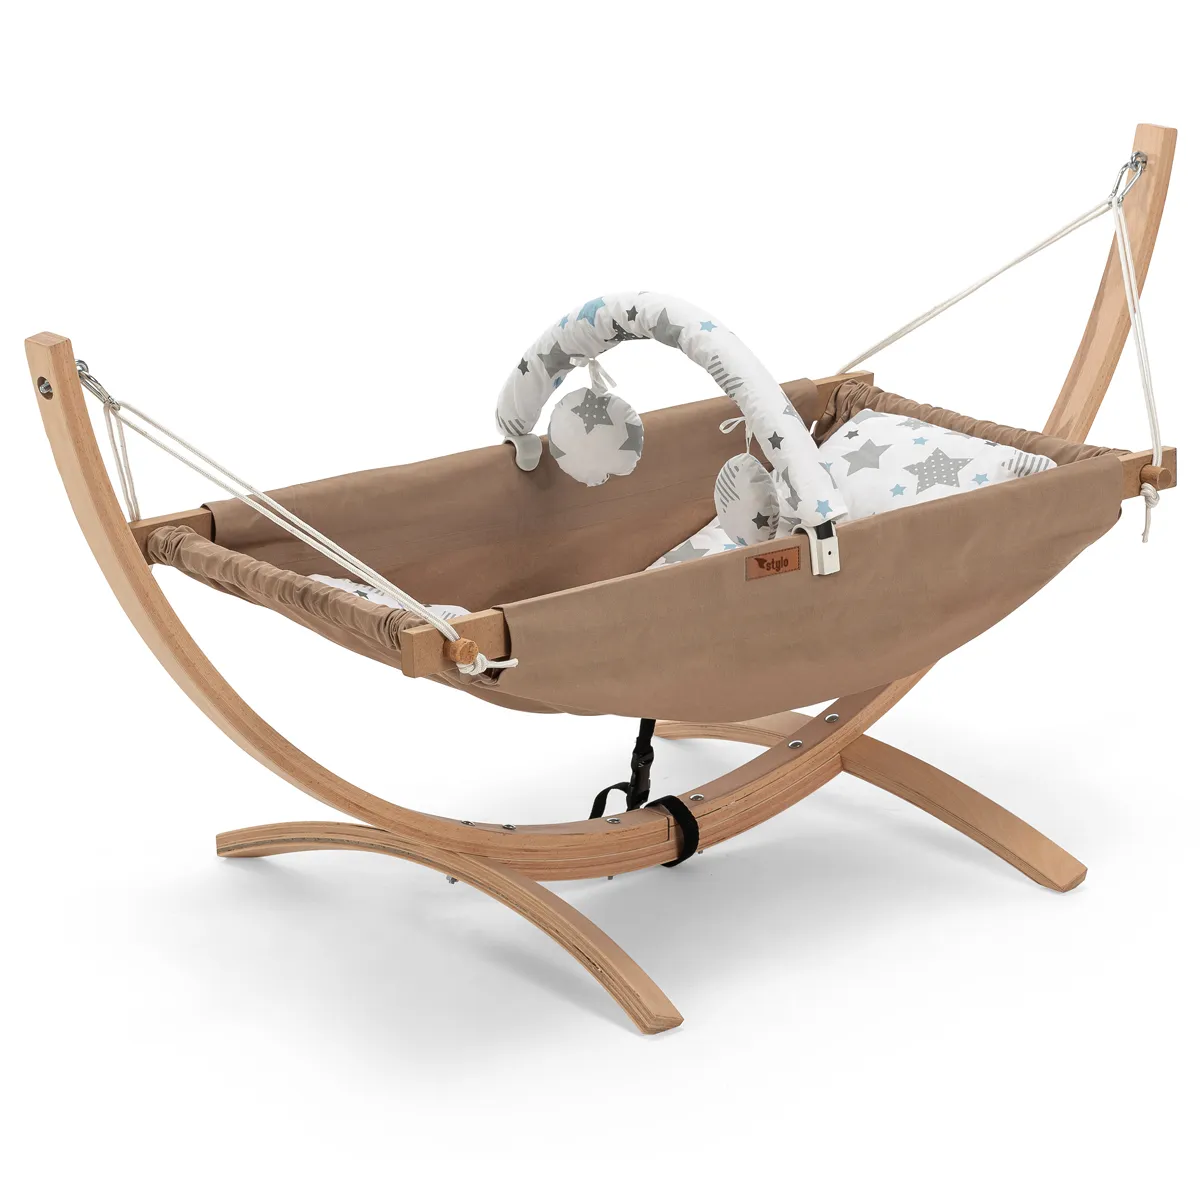 최고의 자연 나무 휴대용 해먹 아기 해먹 스윙 의자 야외 또는 실내 사용 아기 케어